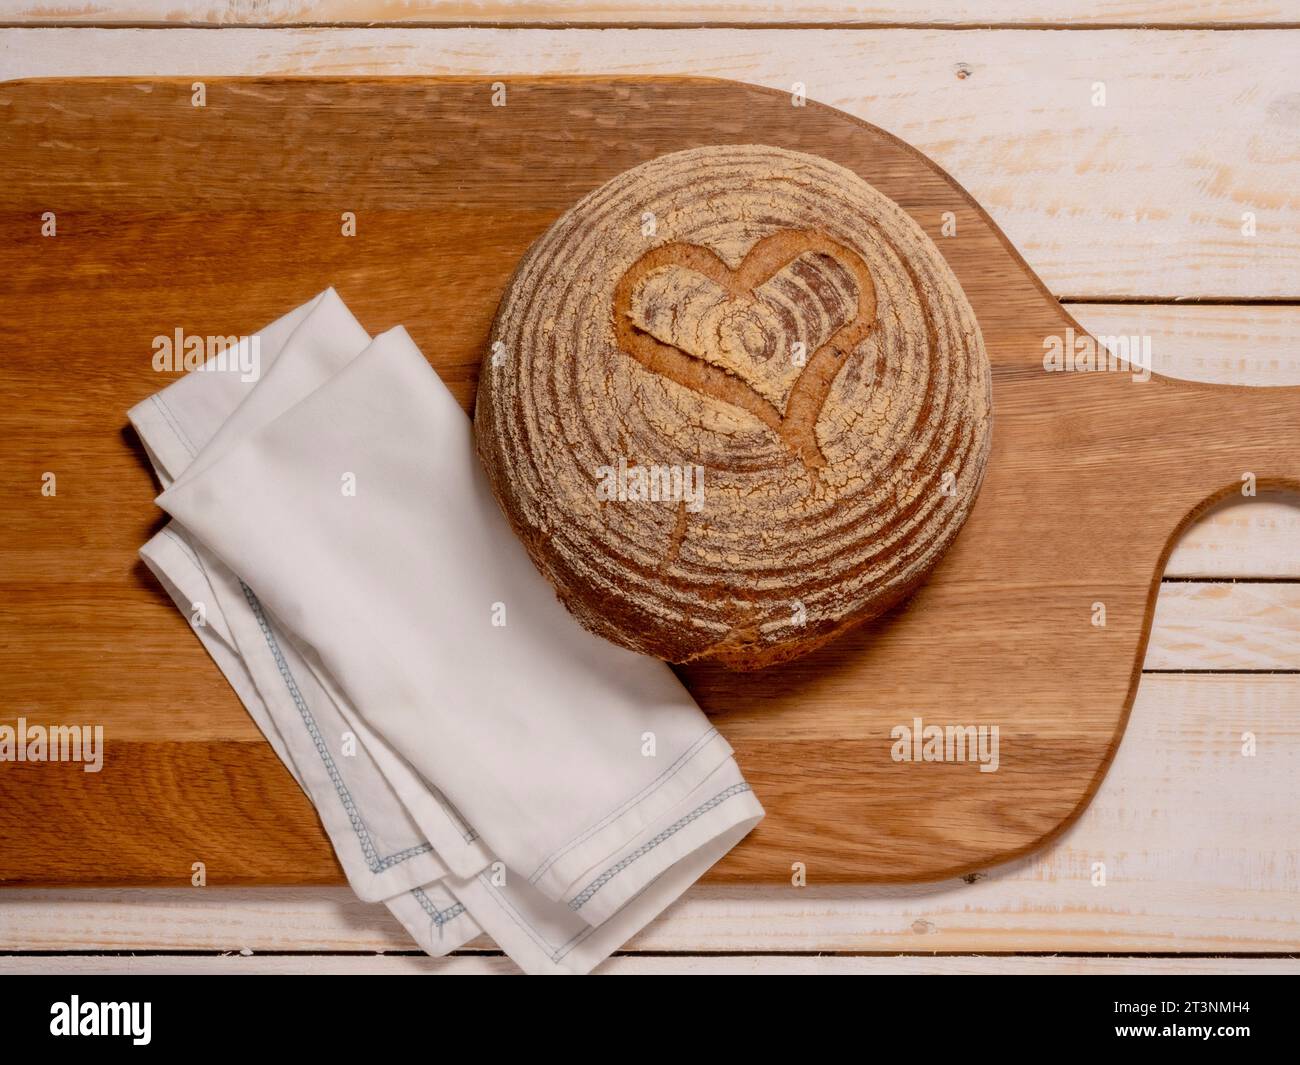 Piatto di un boule di pasta madre senza glutine, a forma di cuore, posizionato su una breadboard di legno. Foto Stock